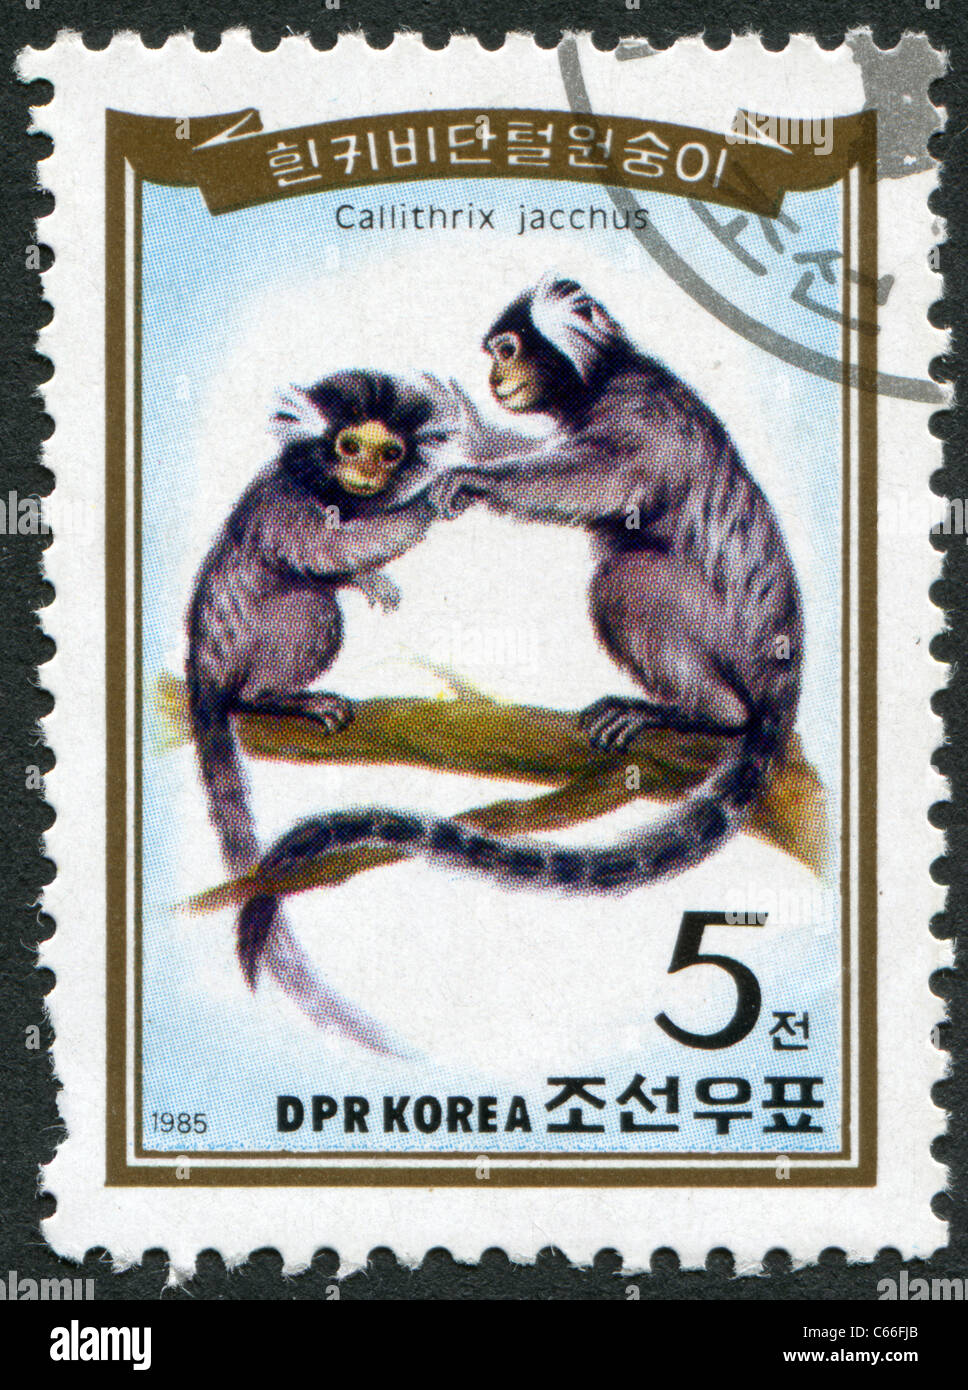 La CORÉE DU NORD - 1985 : timbre imprimé en Corée du Nord, présente le ouistiti commun (Callithrix jacchus) Banque D'Images